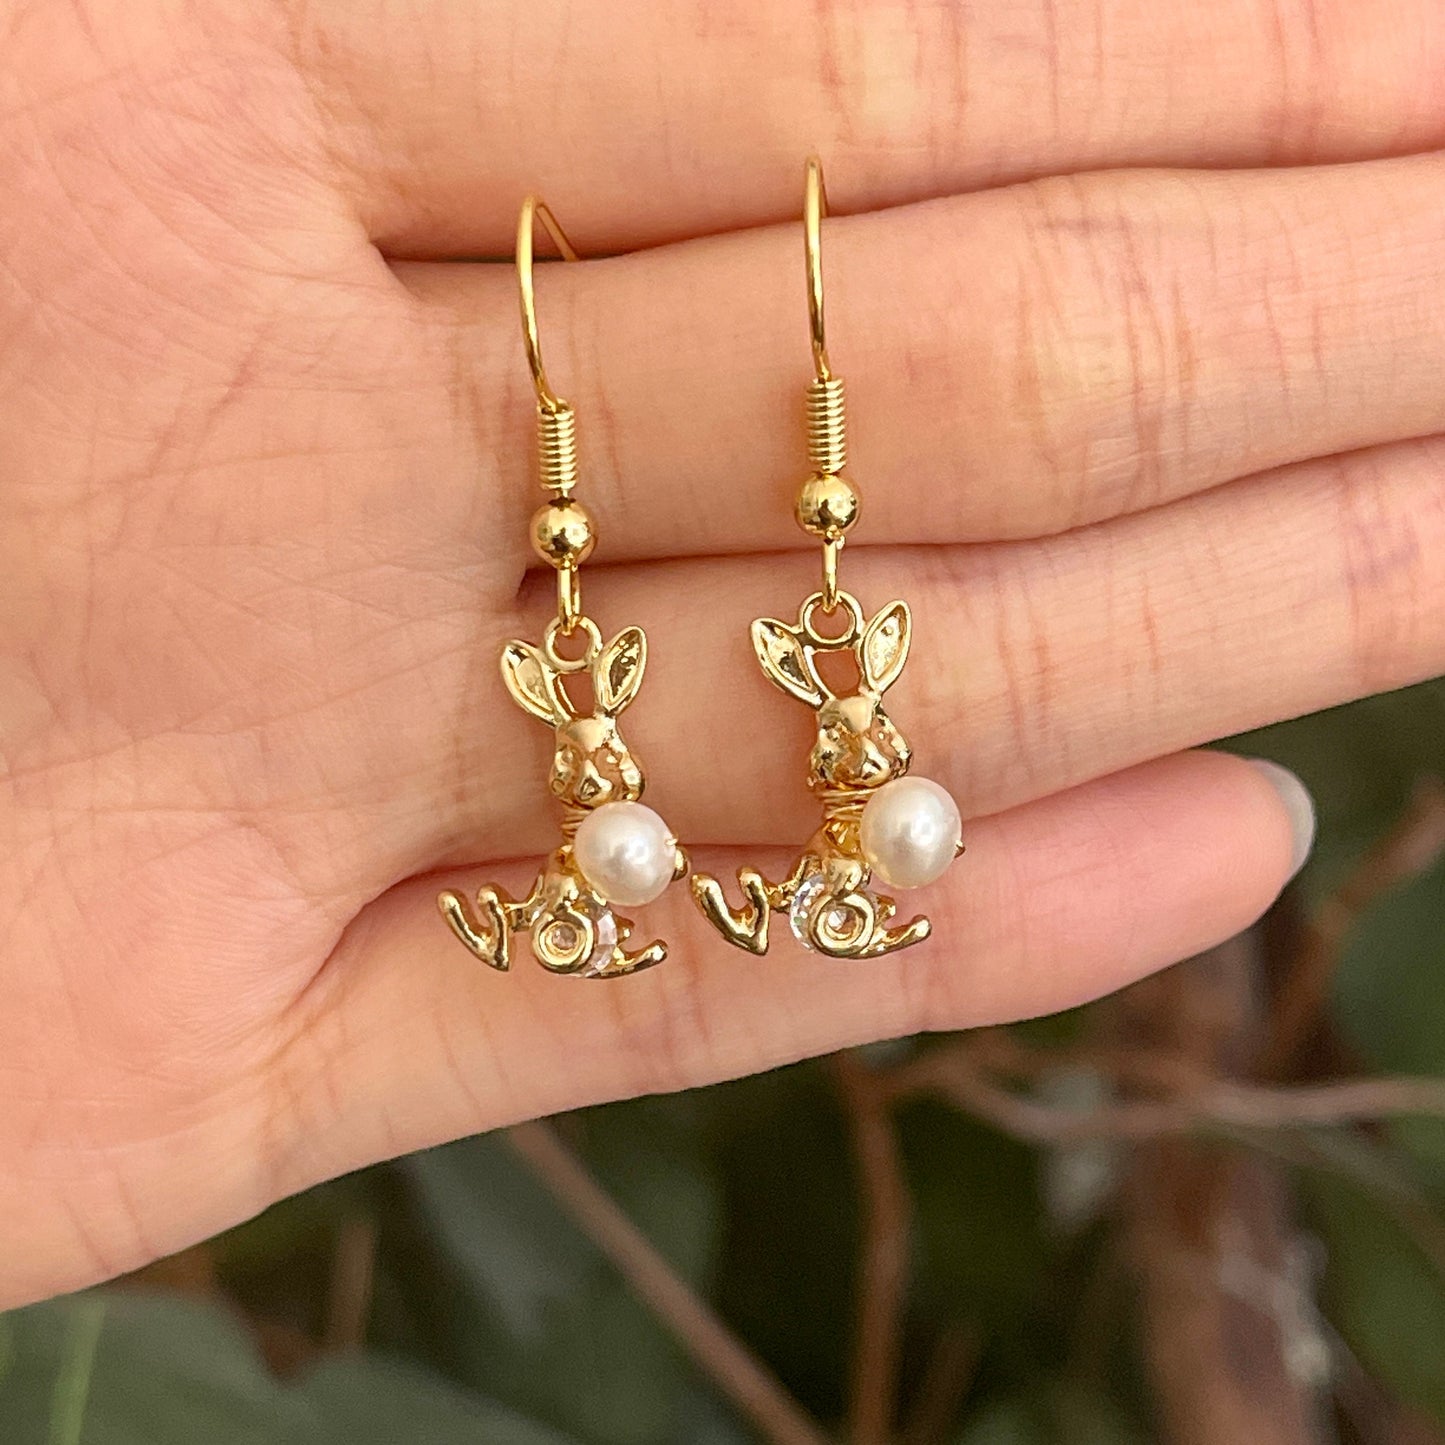 Handmade bunny earrings, 14K gold-filled dangle earrings, Natural pearl earrings, Rabbit earrings, Cute animal earrings, Unique Jewelry